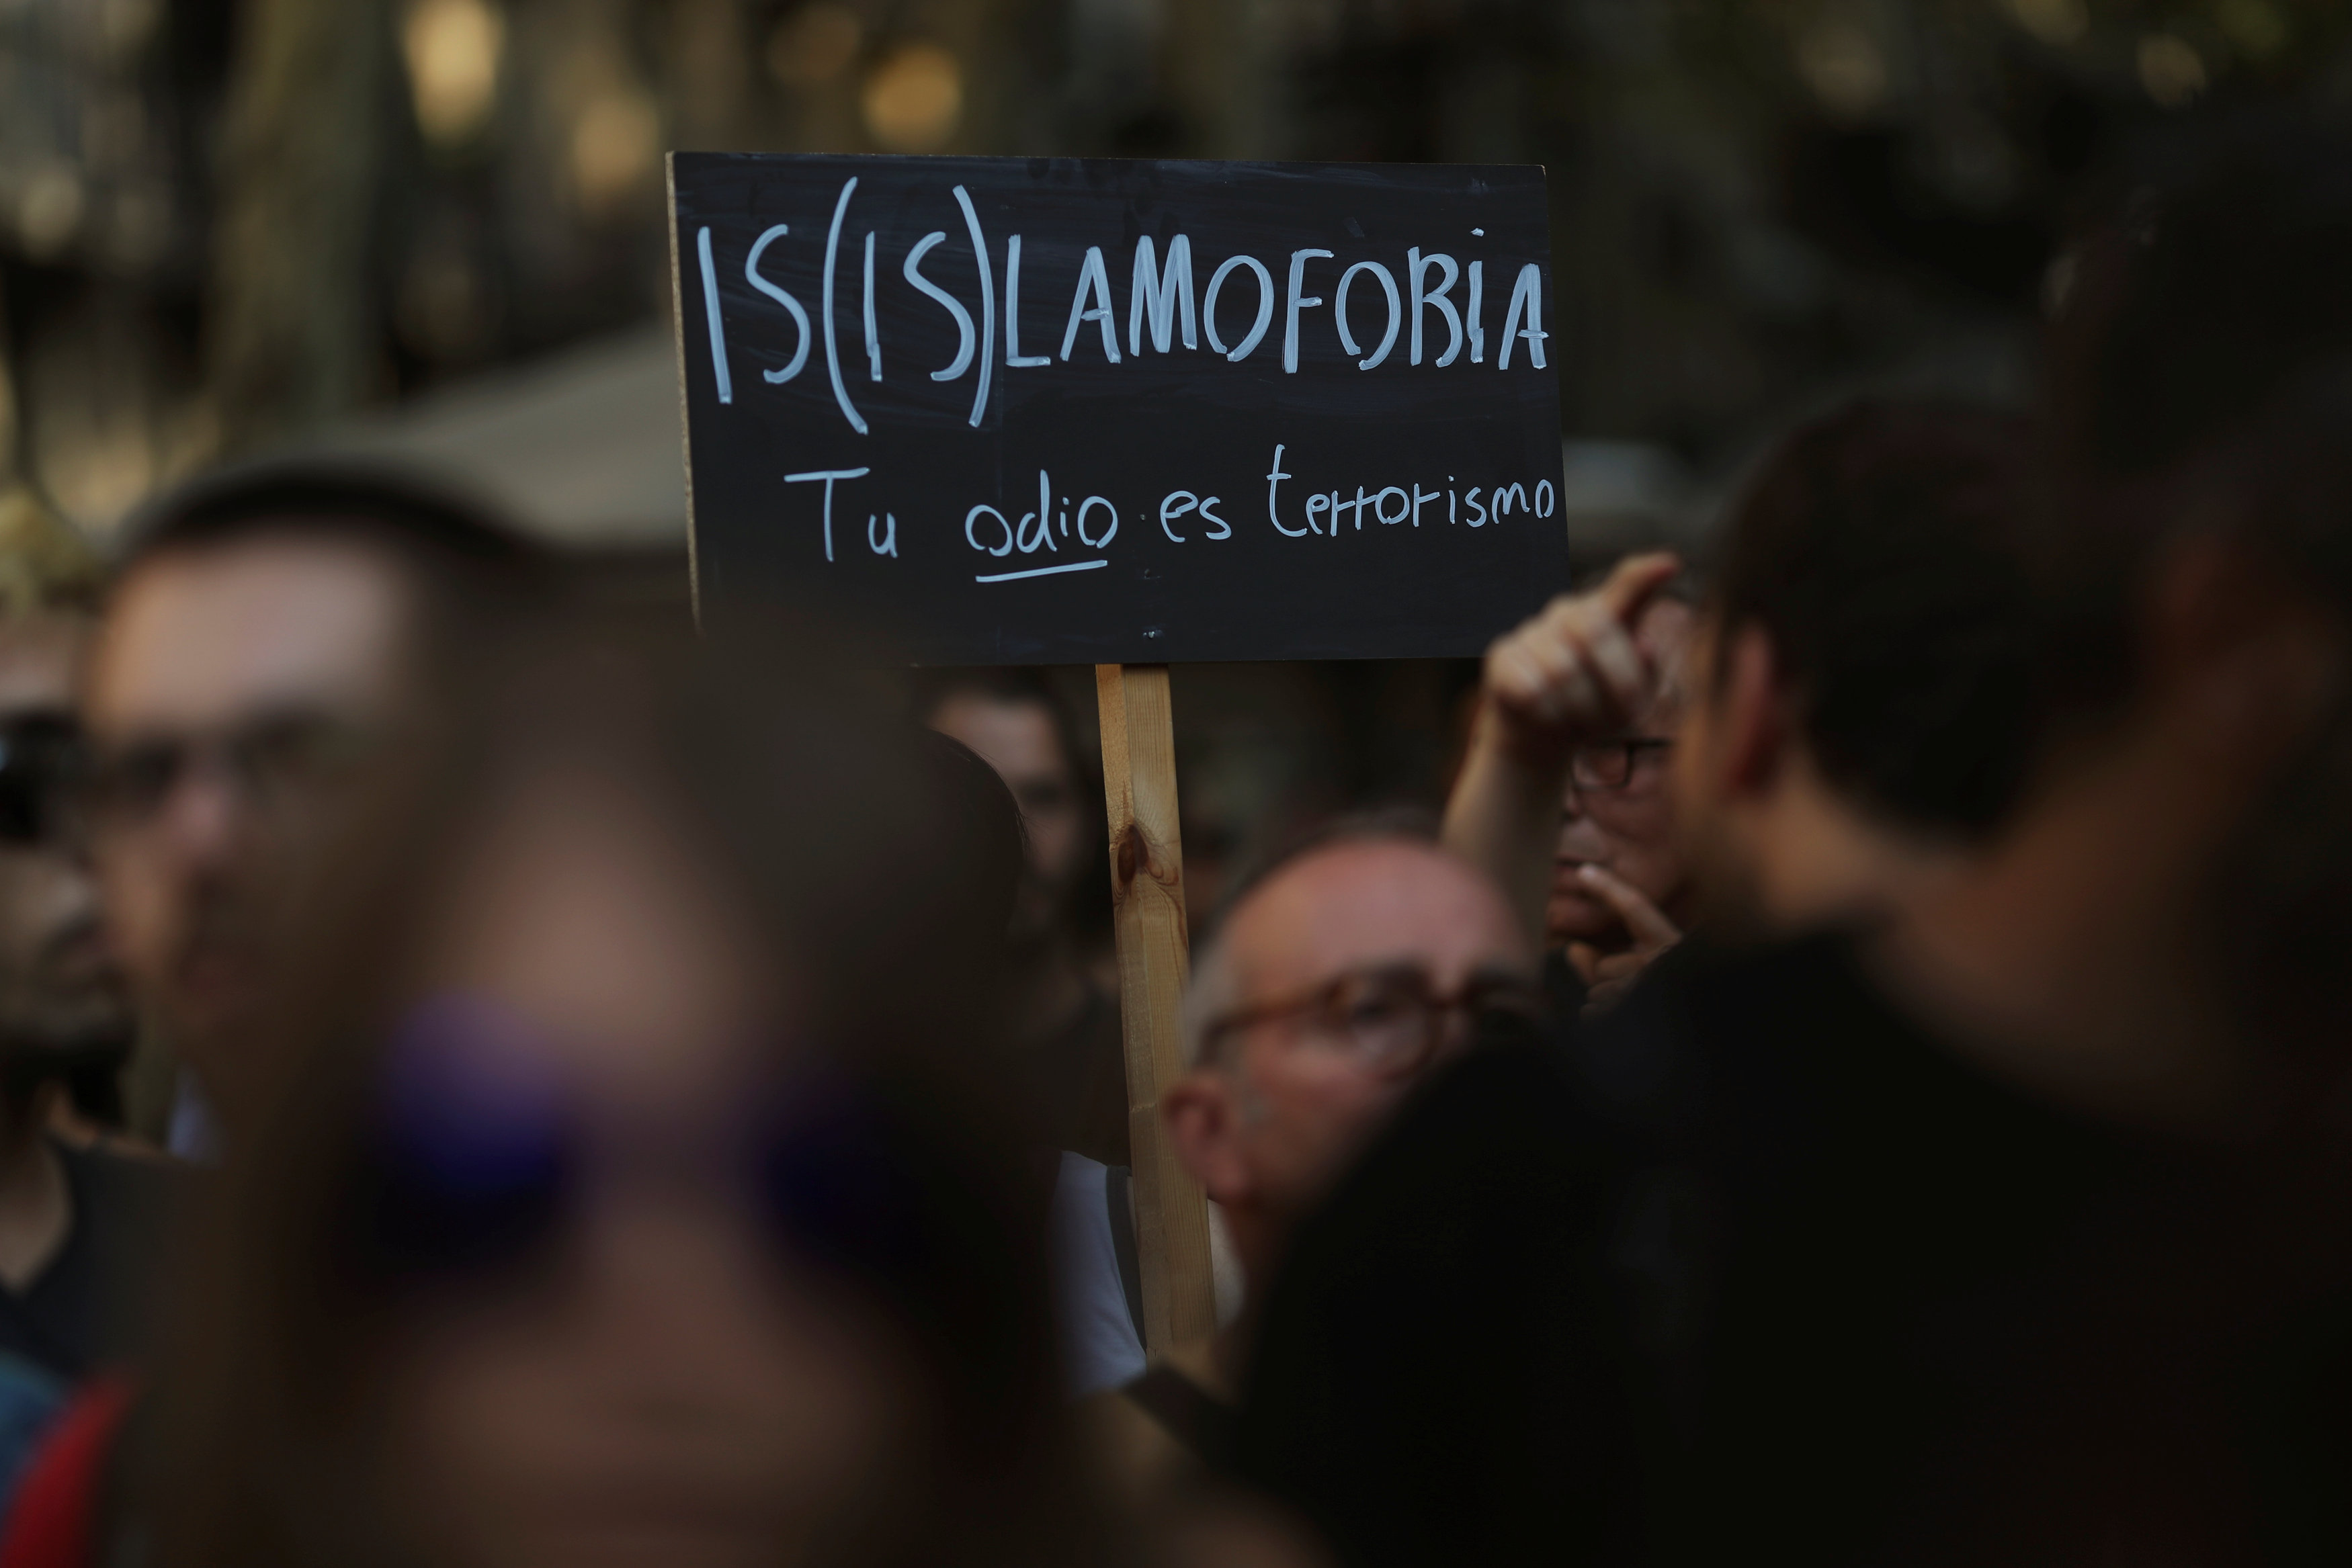 Το ISIS ζητεί εκδίκηση από την Ισπανία πέντε αιώνες μετά